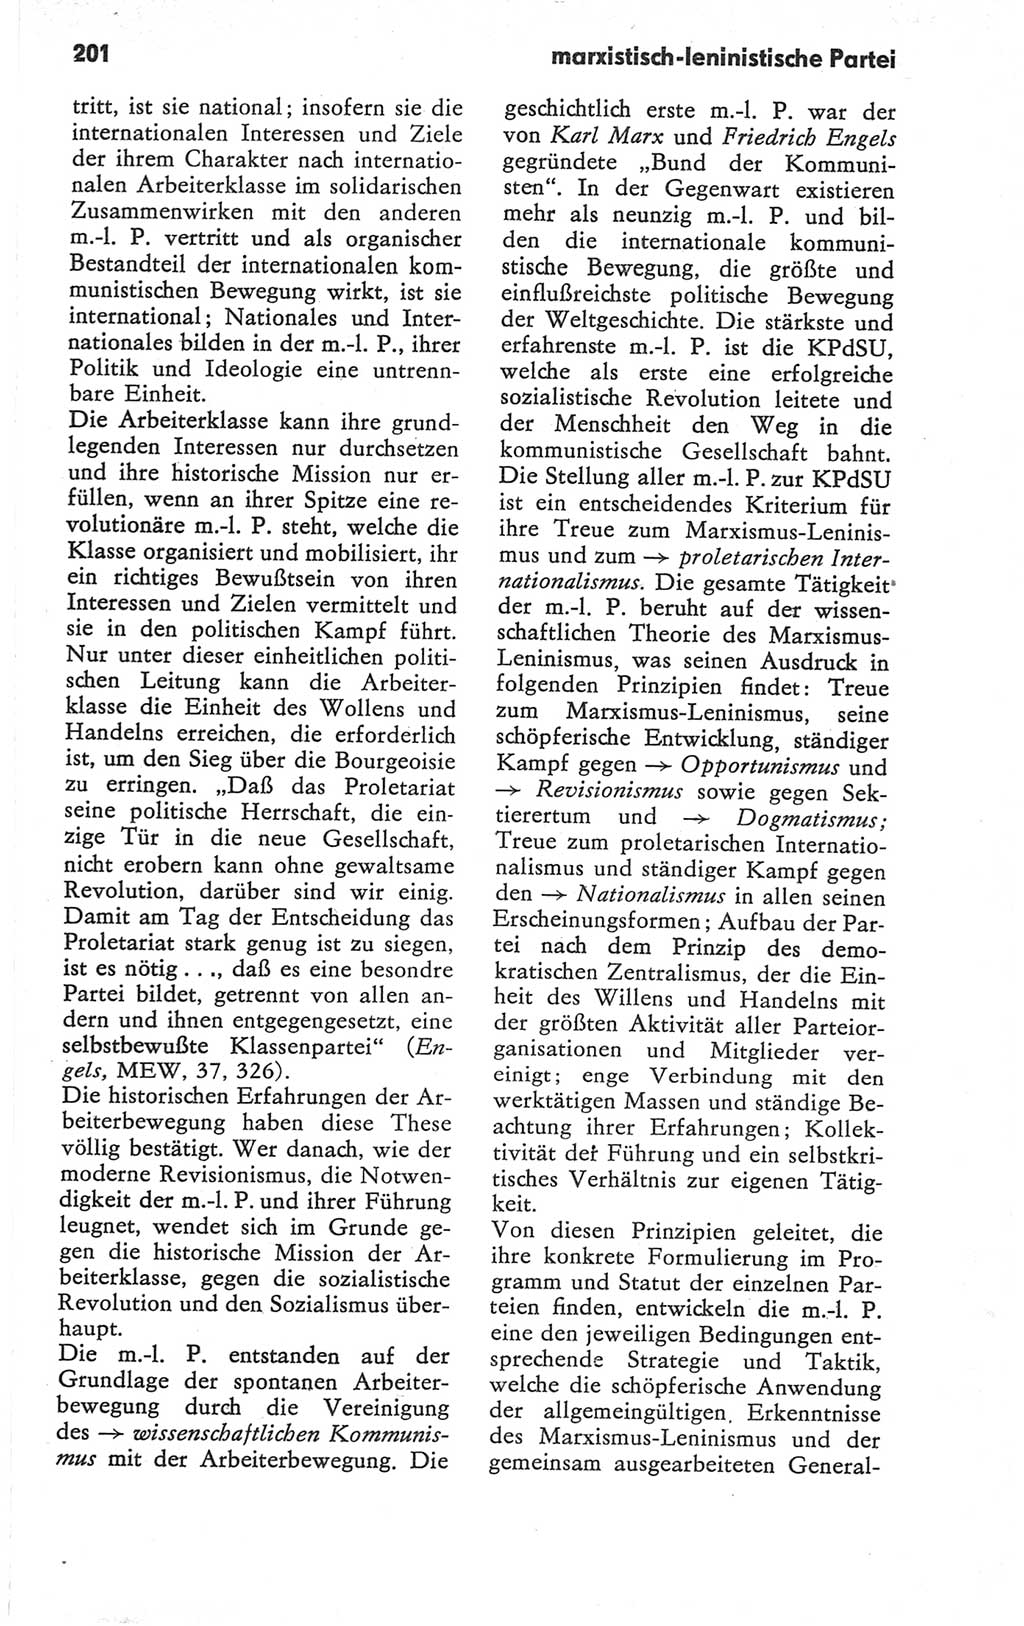 Kleines Wörterbuch der marxistisch-leninistischen Philosophie [Deutsche Demokratische Republik (DDR)] 1979, Seite 201 (Kl. Wb. ML Phil. DDR 1979, S. 201)